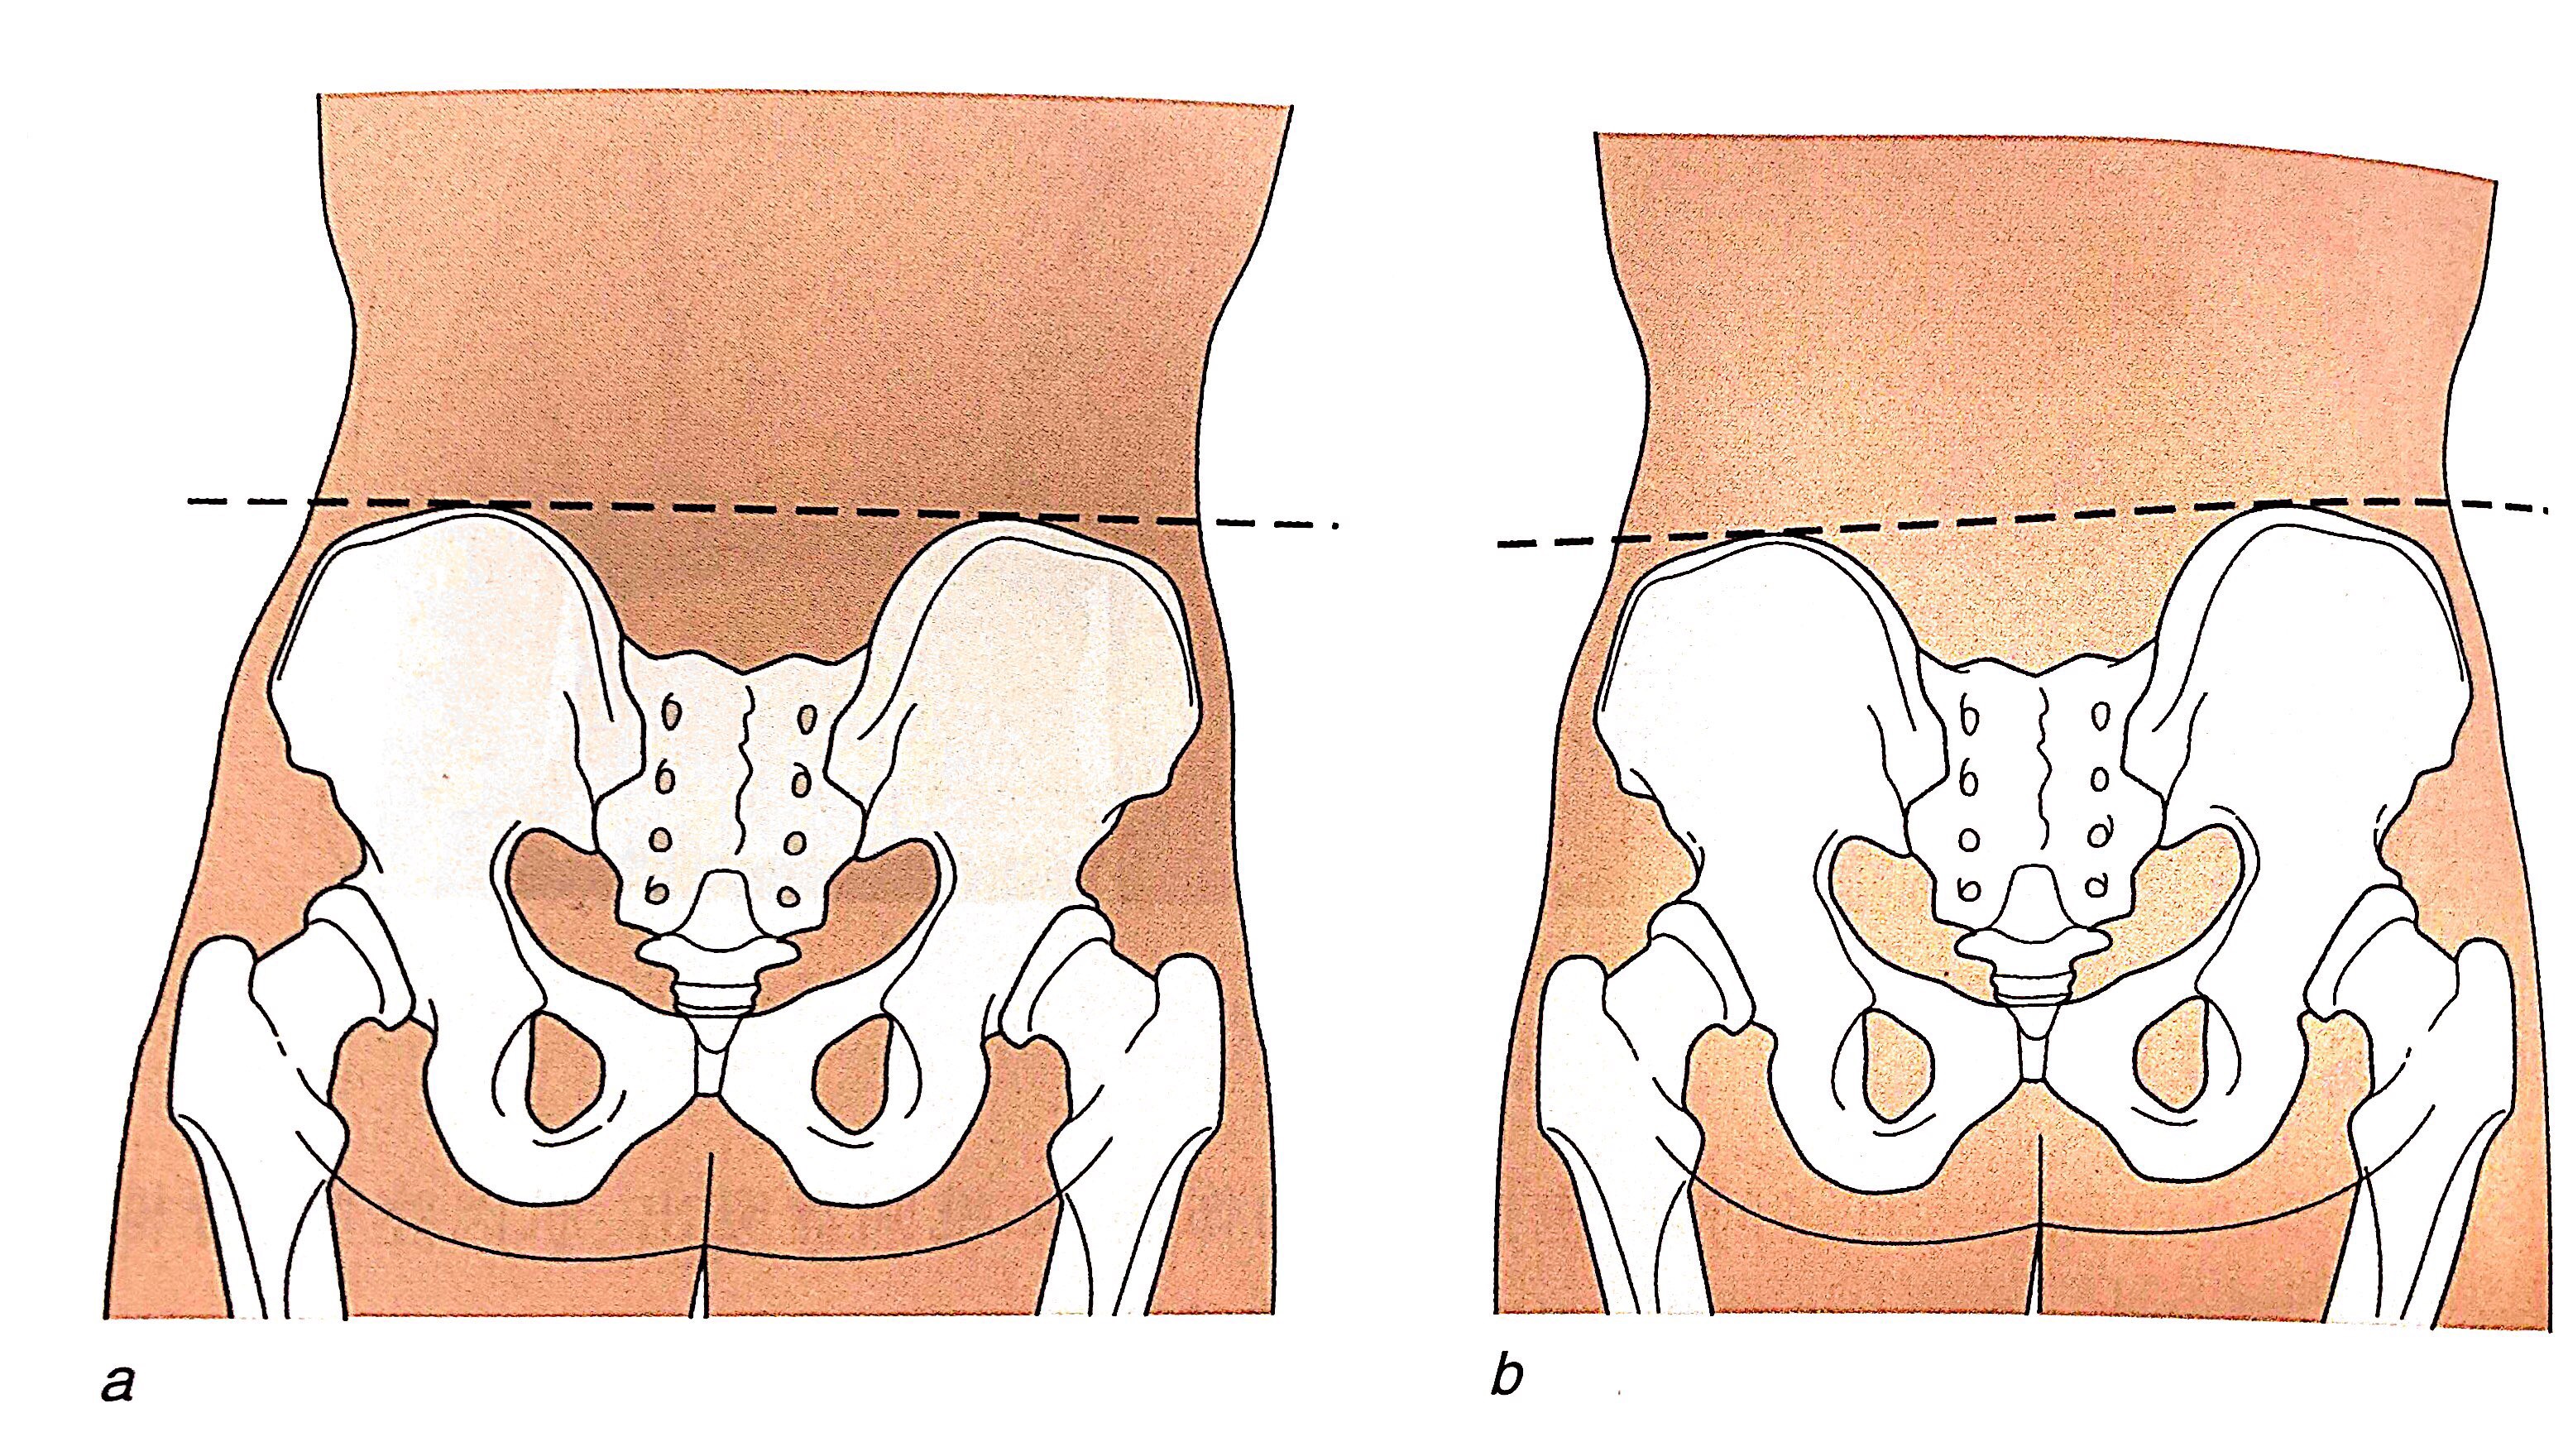 图a显示正常的骨盆,图b显示的骨盆右侧向上倾斜,左侧向下倾斜